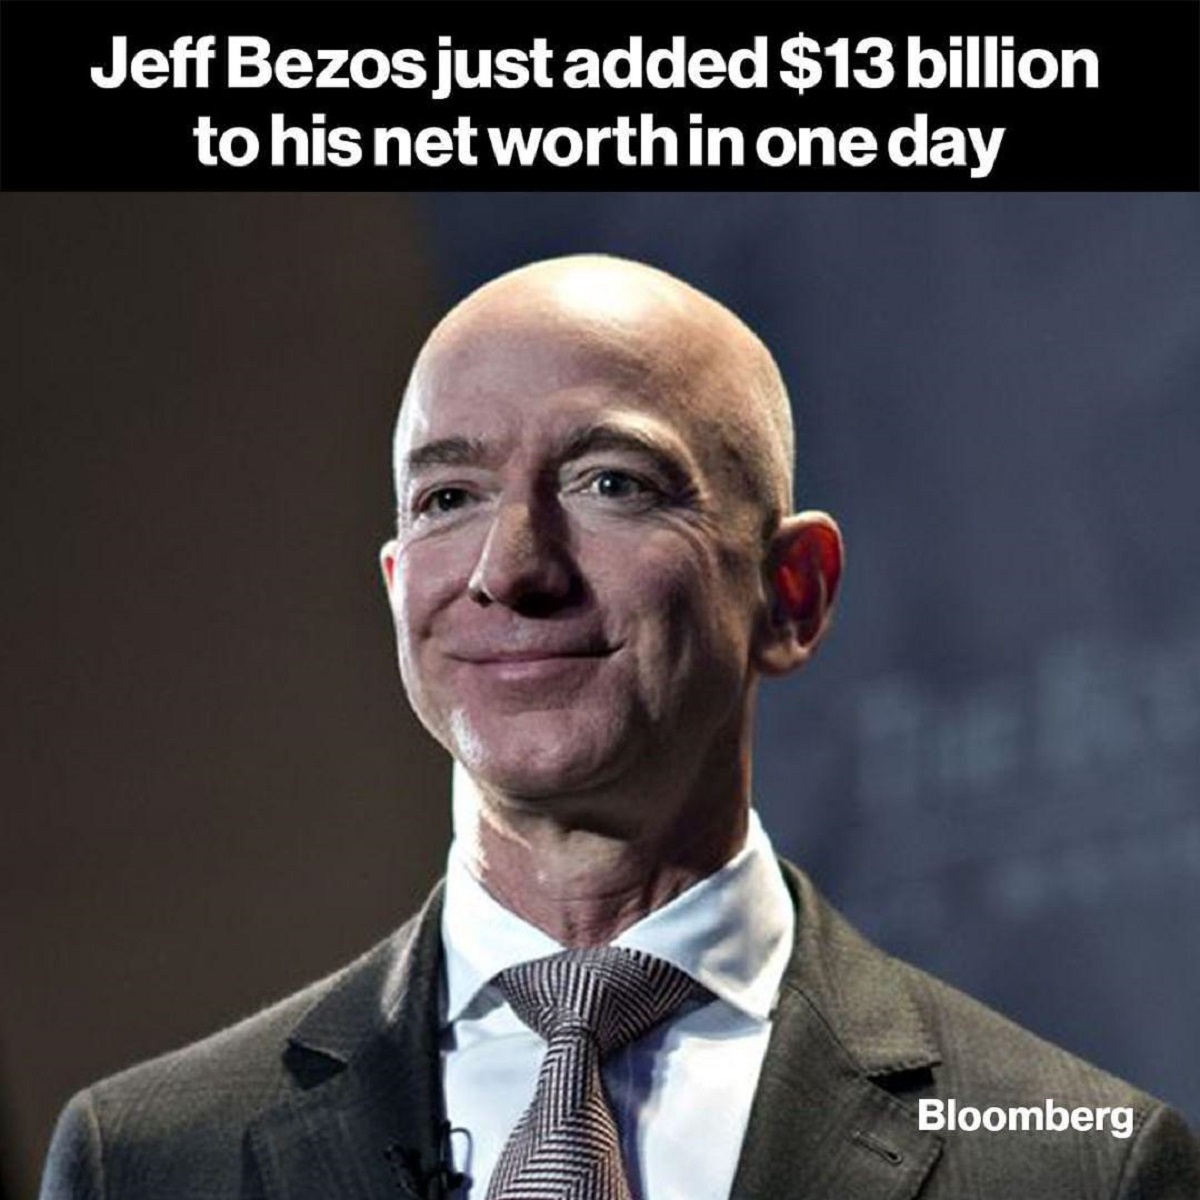 رکورد جف بزوس در افزایش ثروت!/ مدیرعامل آمازون در یک روز ۱۳میلیارد دلار به‌‌دست آورد 